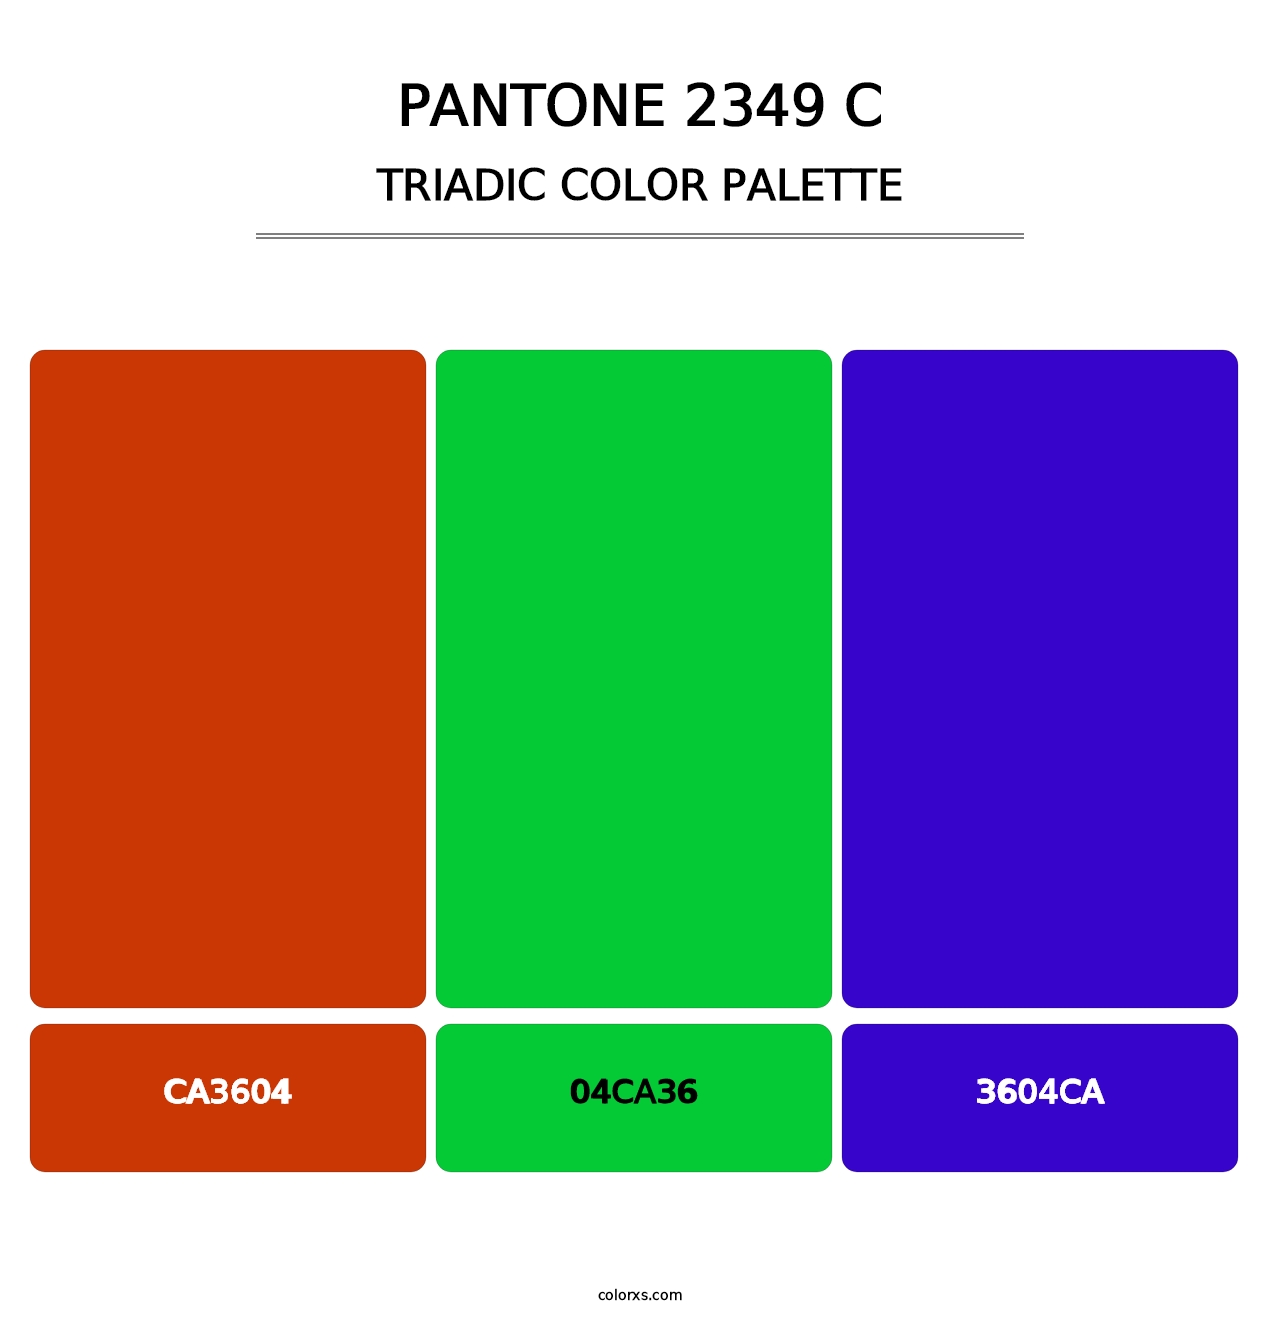 PANTONE 2349 C - Triadic Color Palette